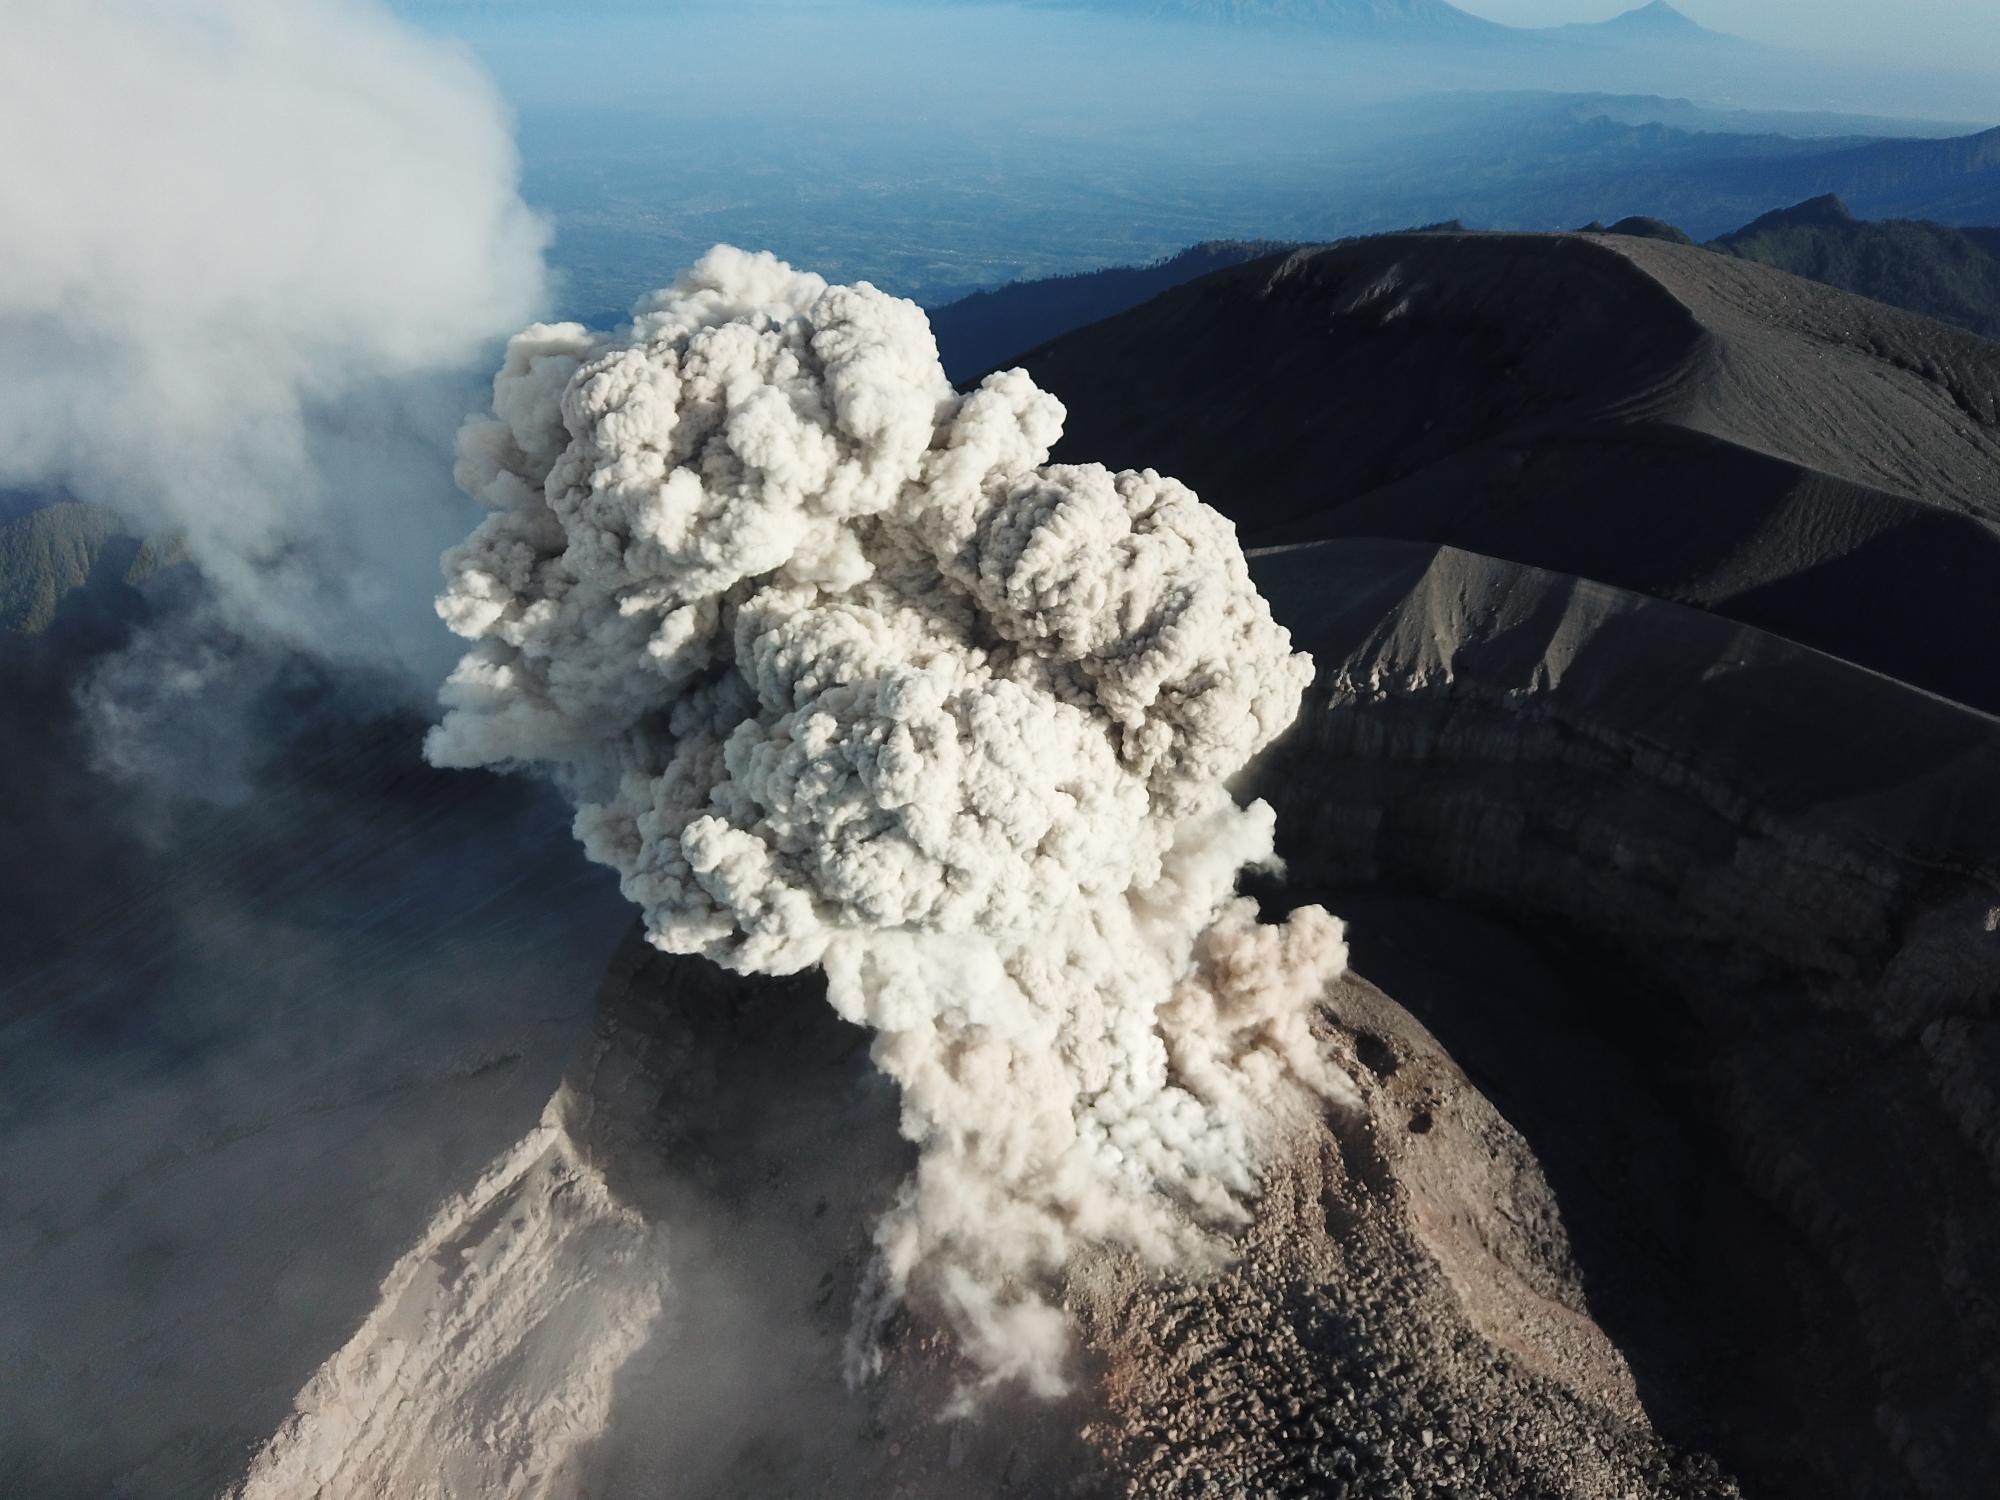 Egész falvakat perzselt fel az indonéziai Semeru vulkán